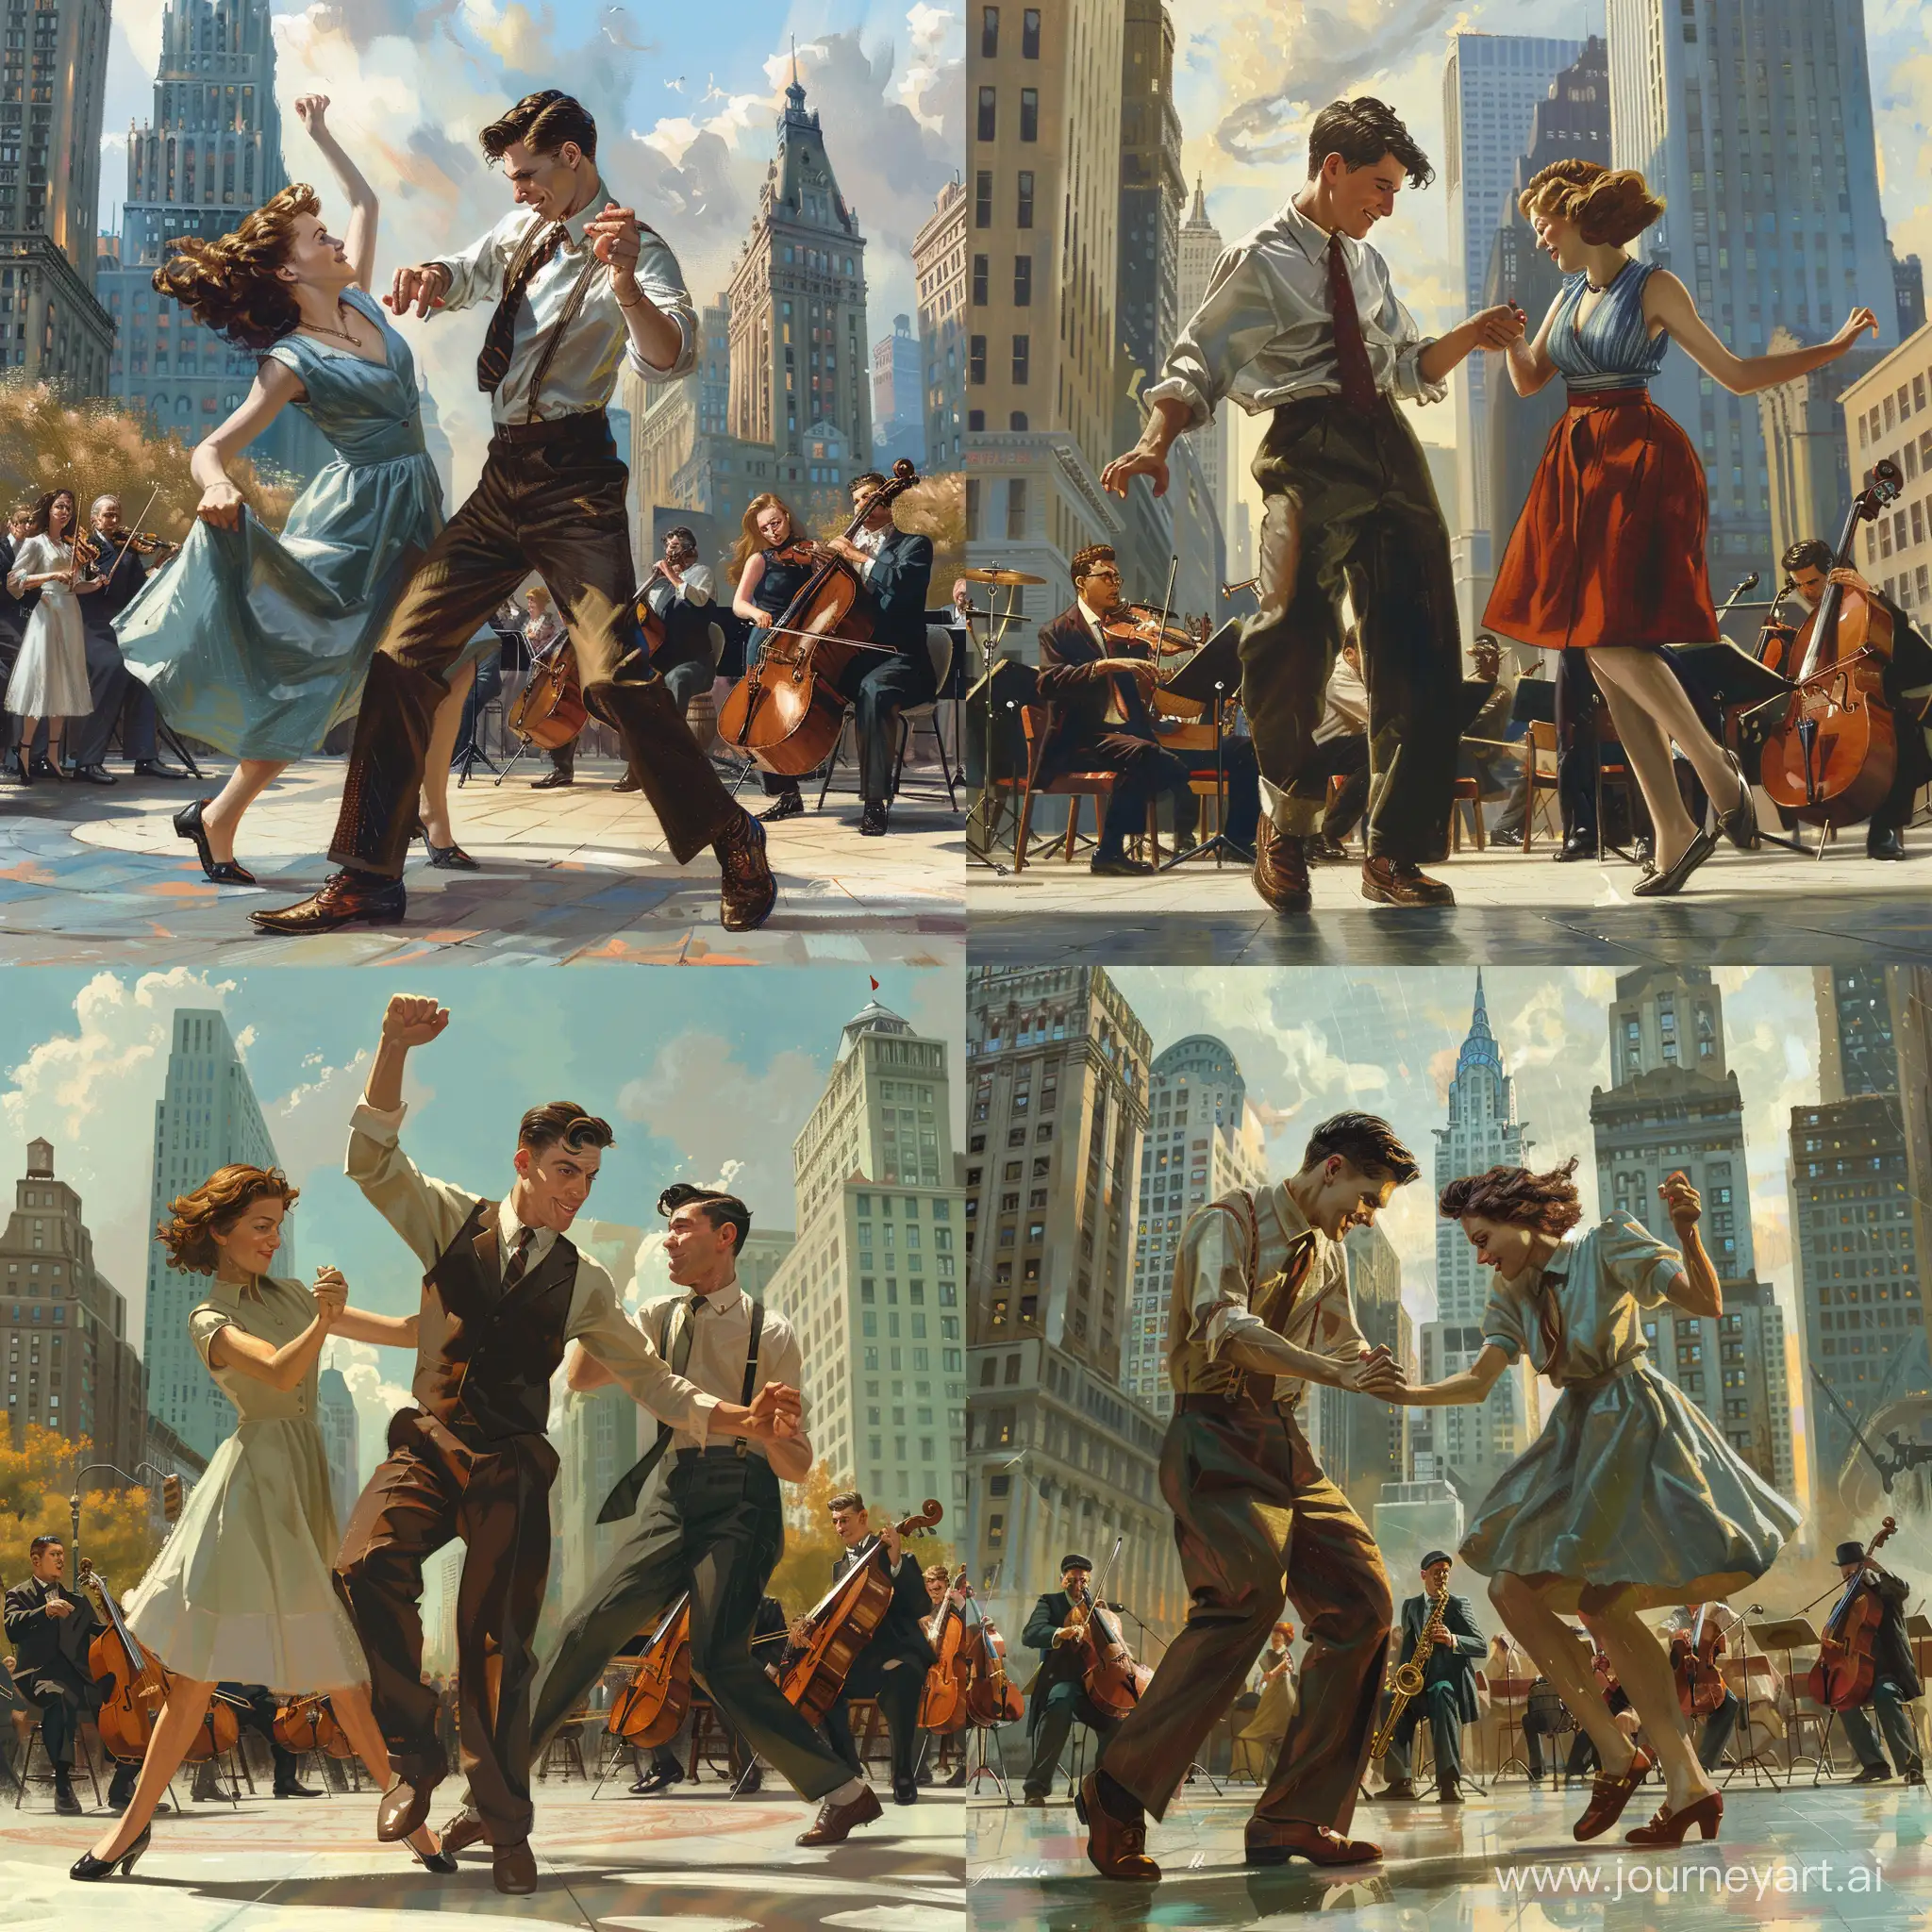 Реалистичное изображение  парня двадцати пяти лет и девушки двадцати лет,  которые танцую линди хоп на городской площади.  Парень и девушка делают движение swing out. На заднем фоне, недалеко от танцующей пары,  играет джазовый оркестр.